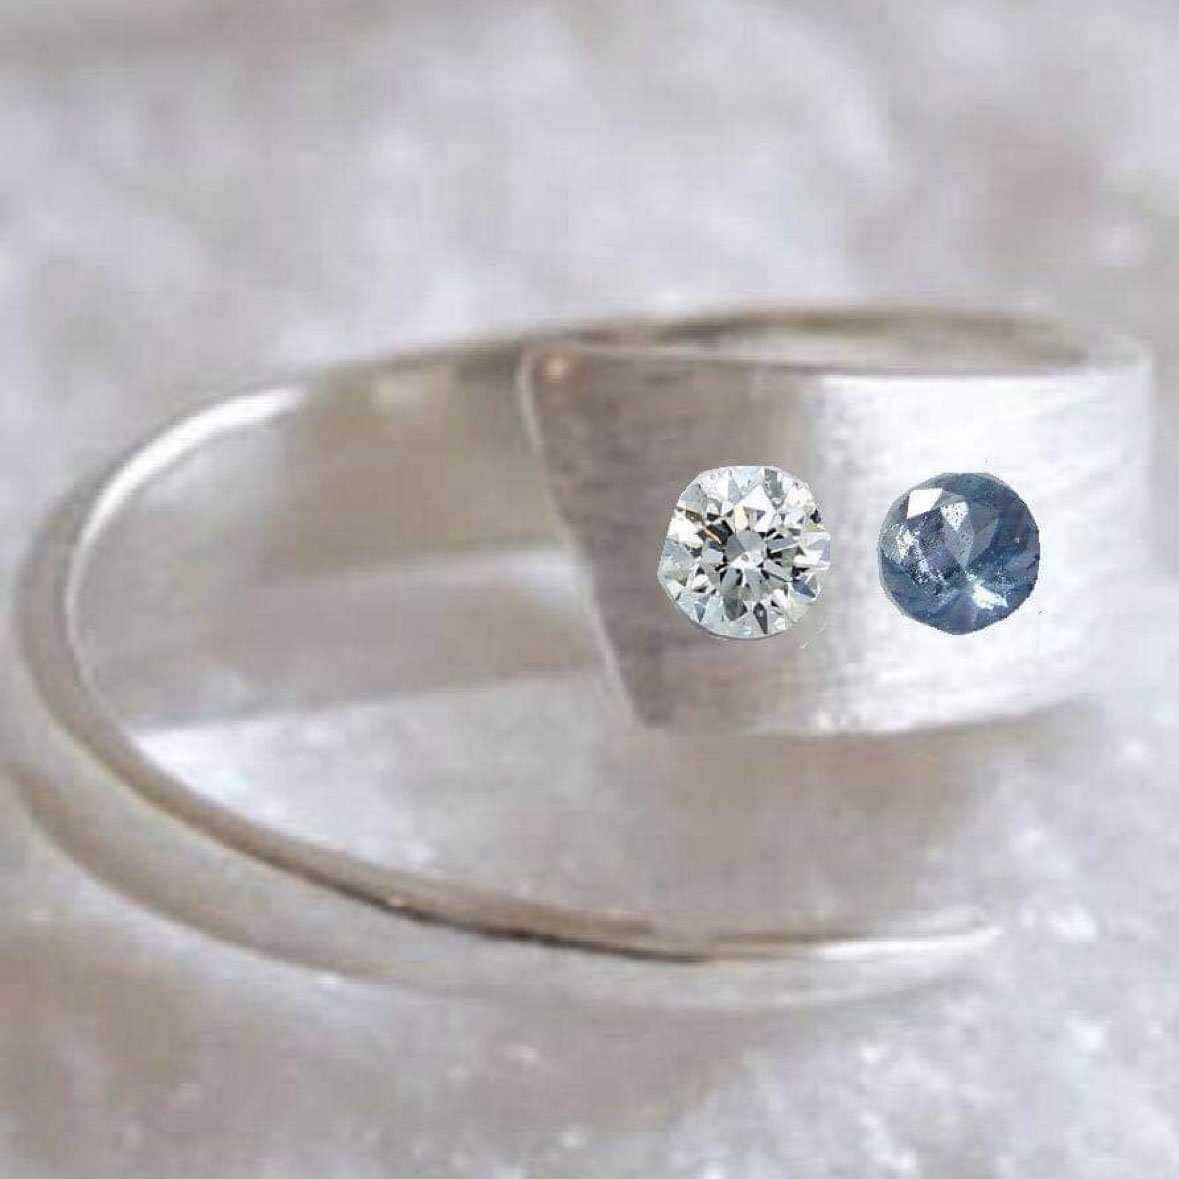 photoshopped ring idea